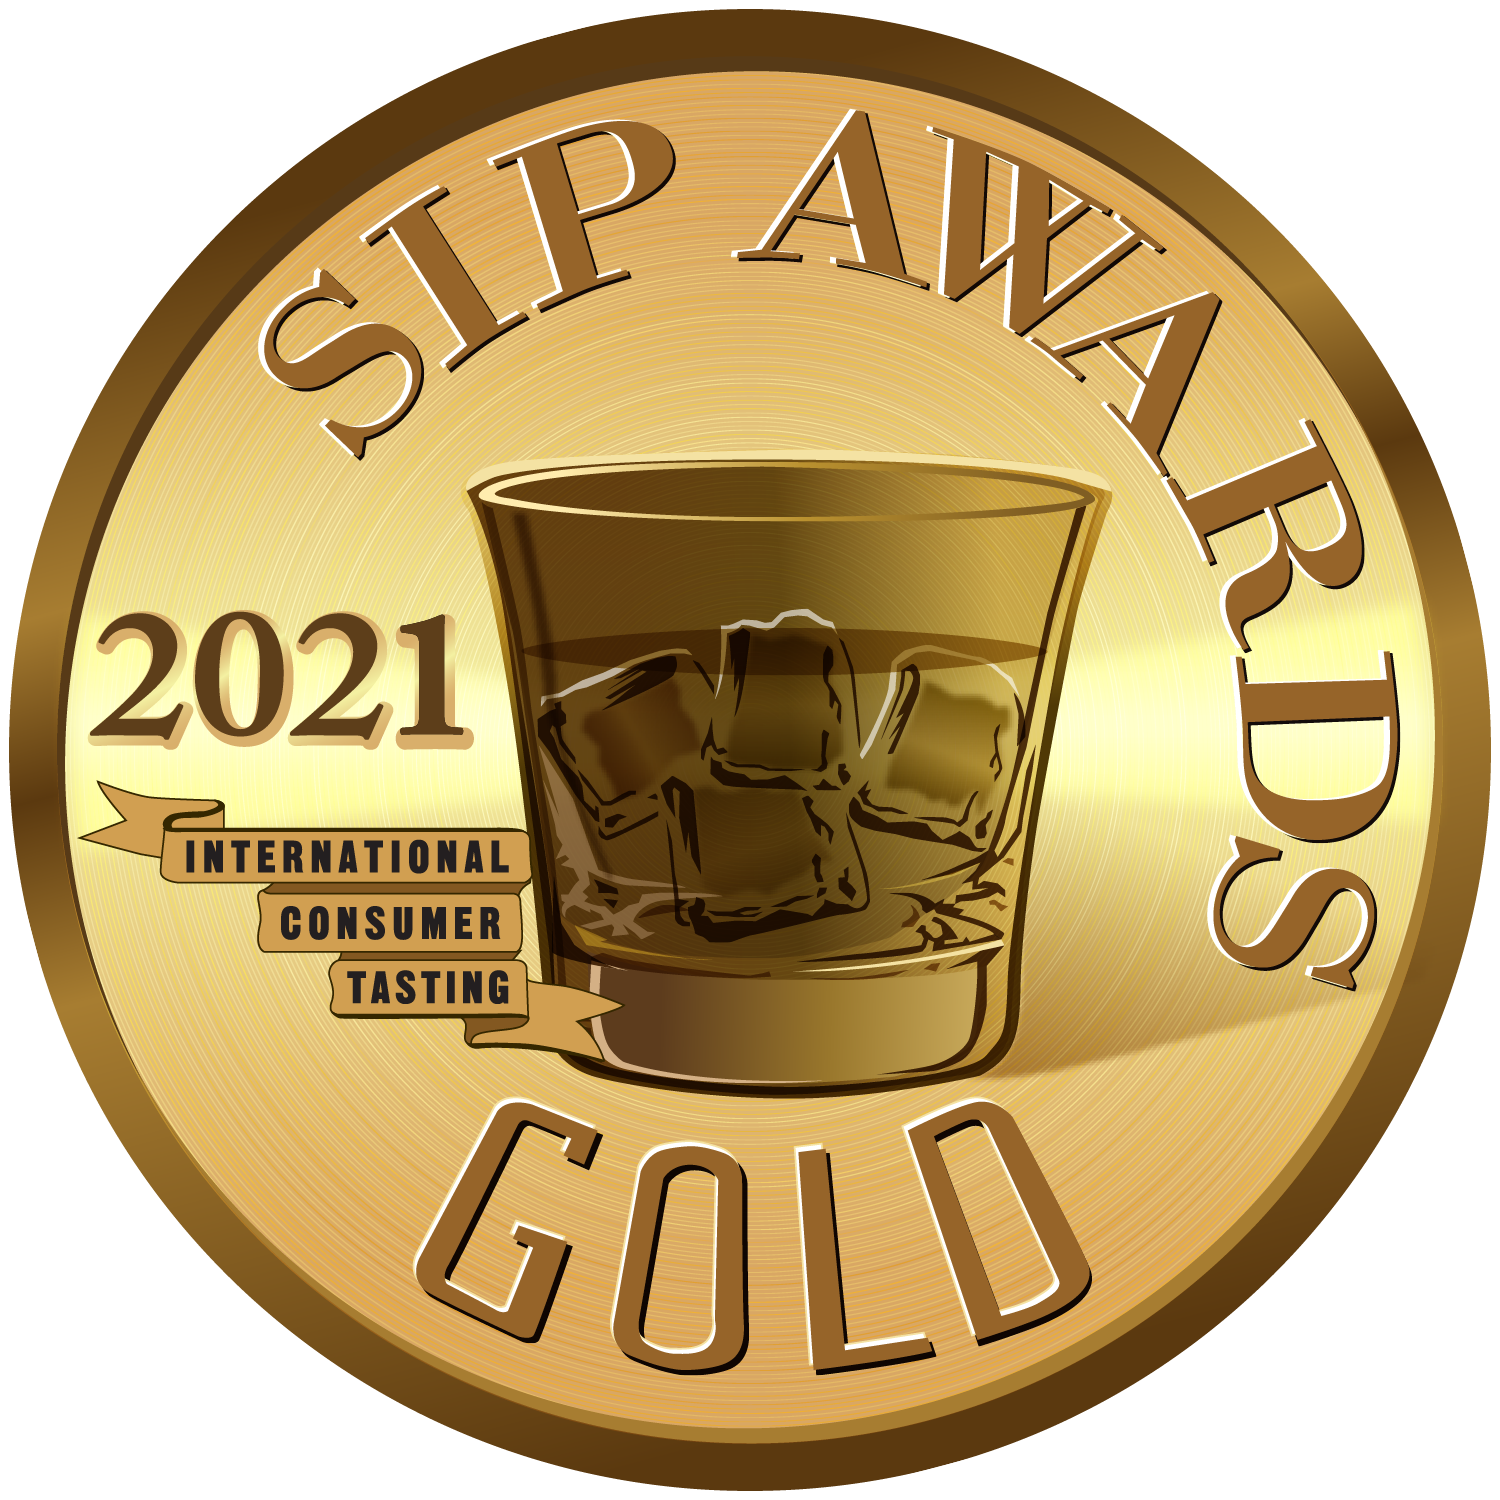 BATI Dark & RATU Spiced_Gold Medal 2021 (1)